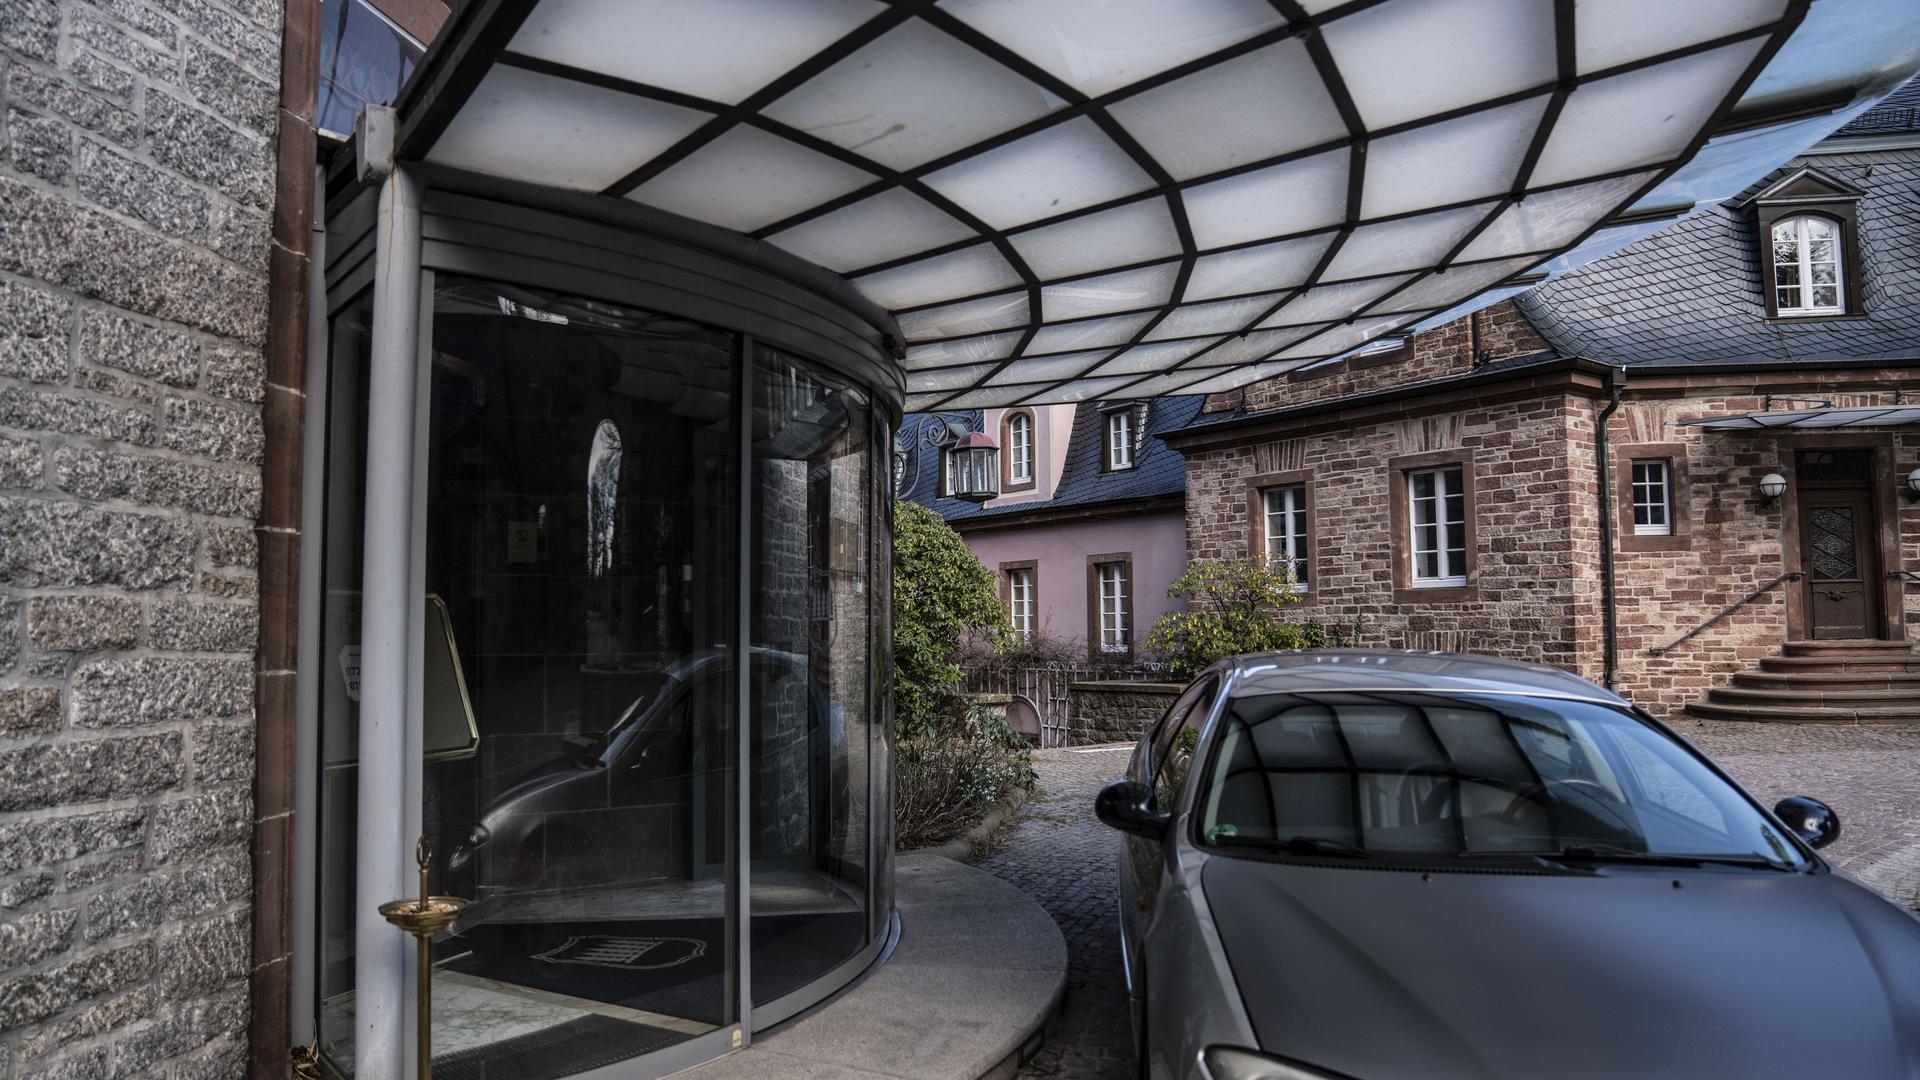 Vor dem Eingang des Luxushotels steht ein Auto unter dem Vordach.